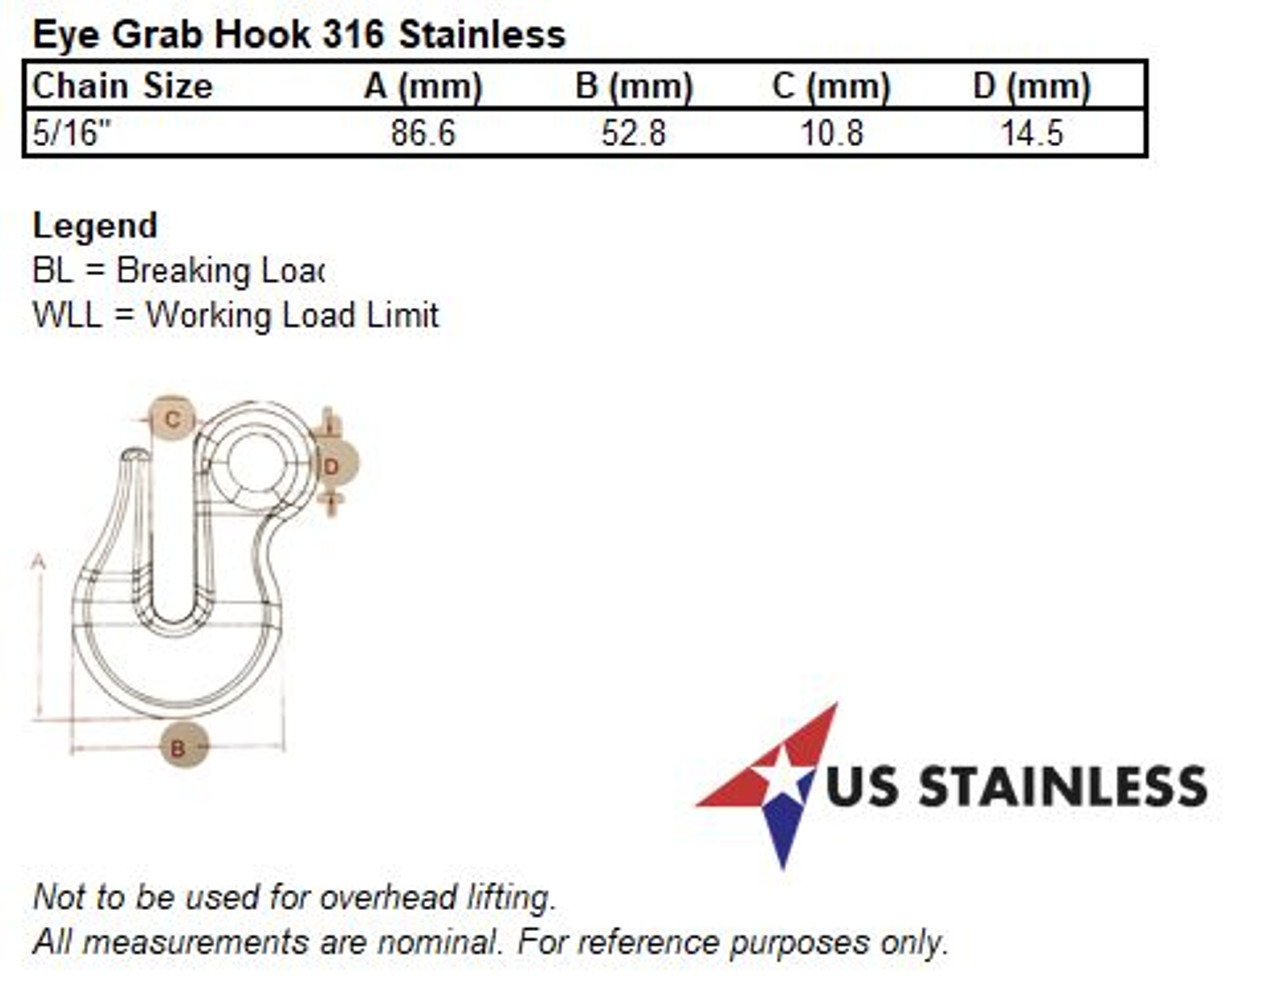 Stainless Steel 316 Eye Grab Hook 5/16 x 3 1/4 Marine Grade - US Stainless